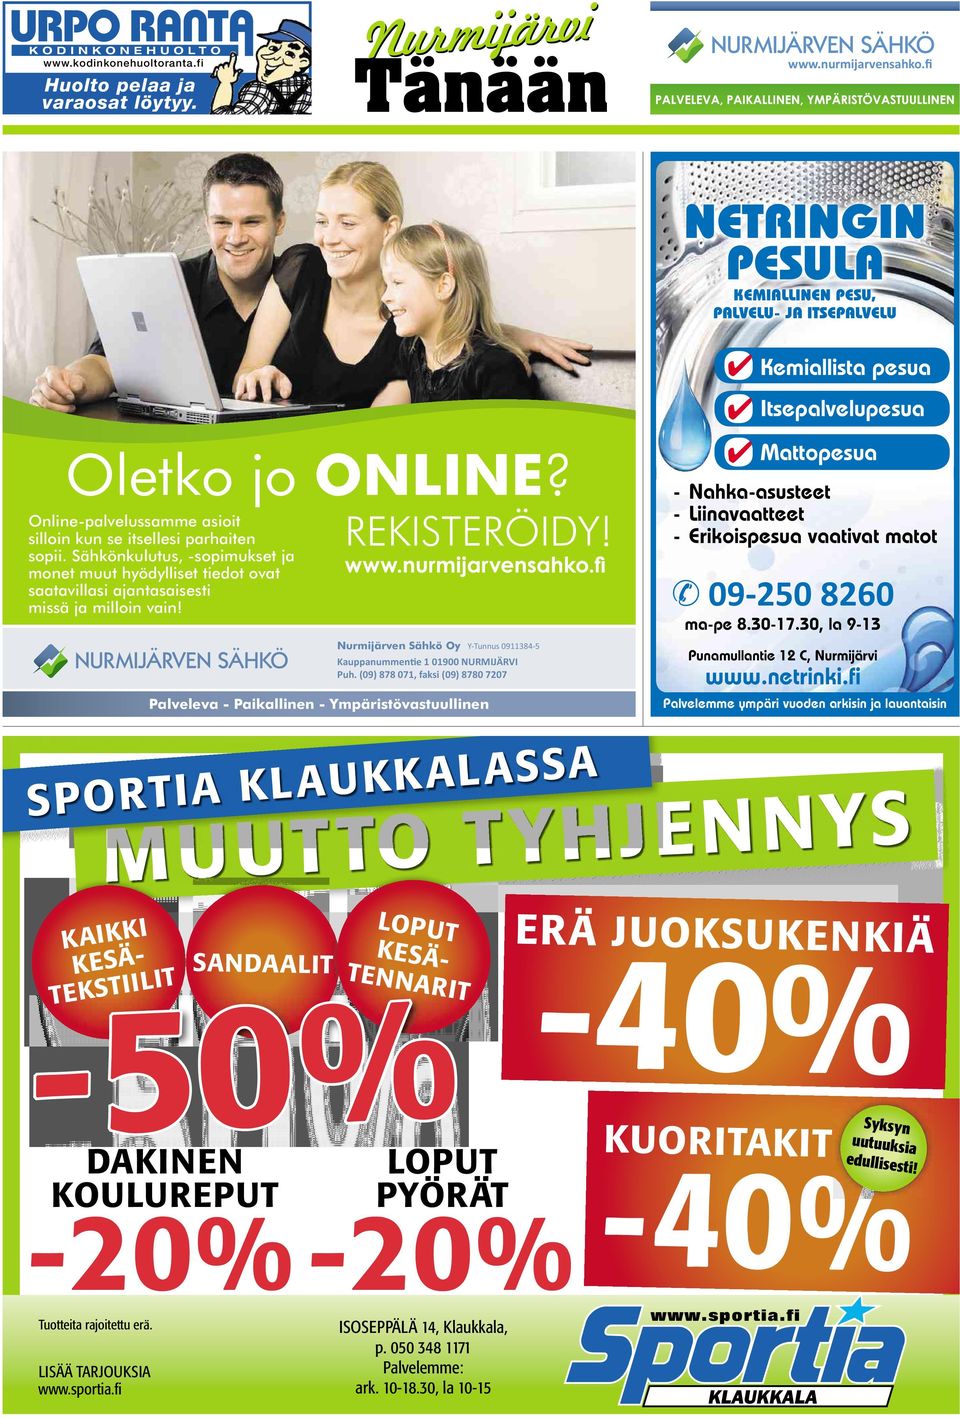 Nurmijärven Sähkö Oy Y-Tunnus 0911384-5 Kauppanummen e 101900 NURMIJÄRVI Puh.